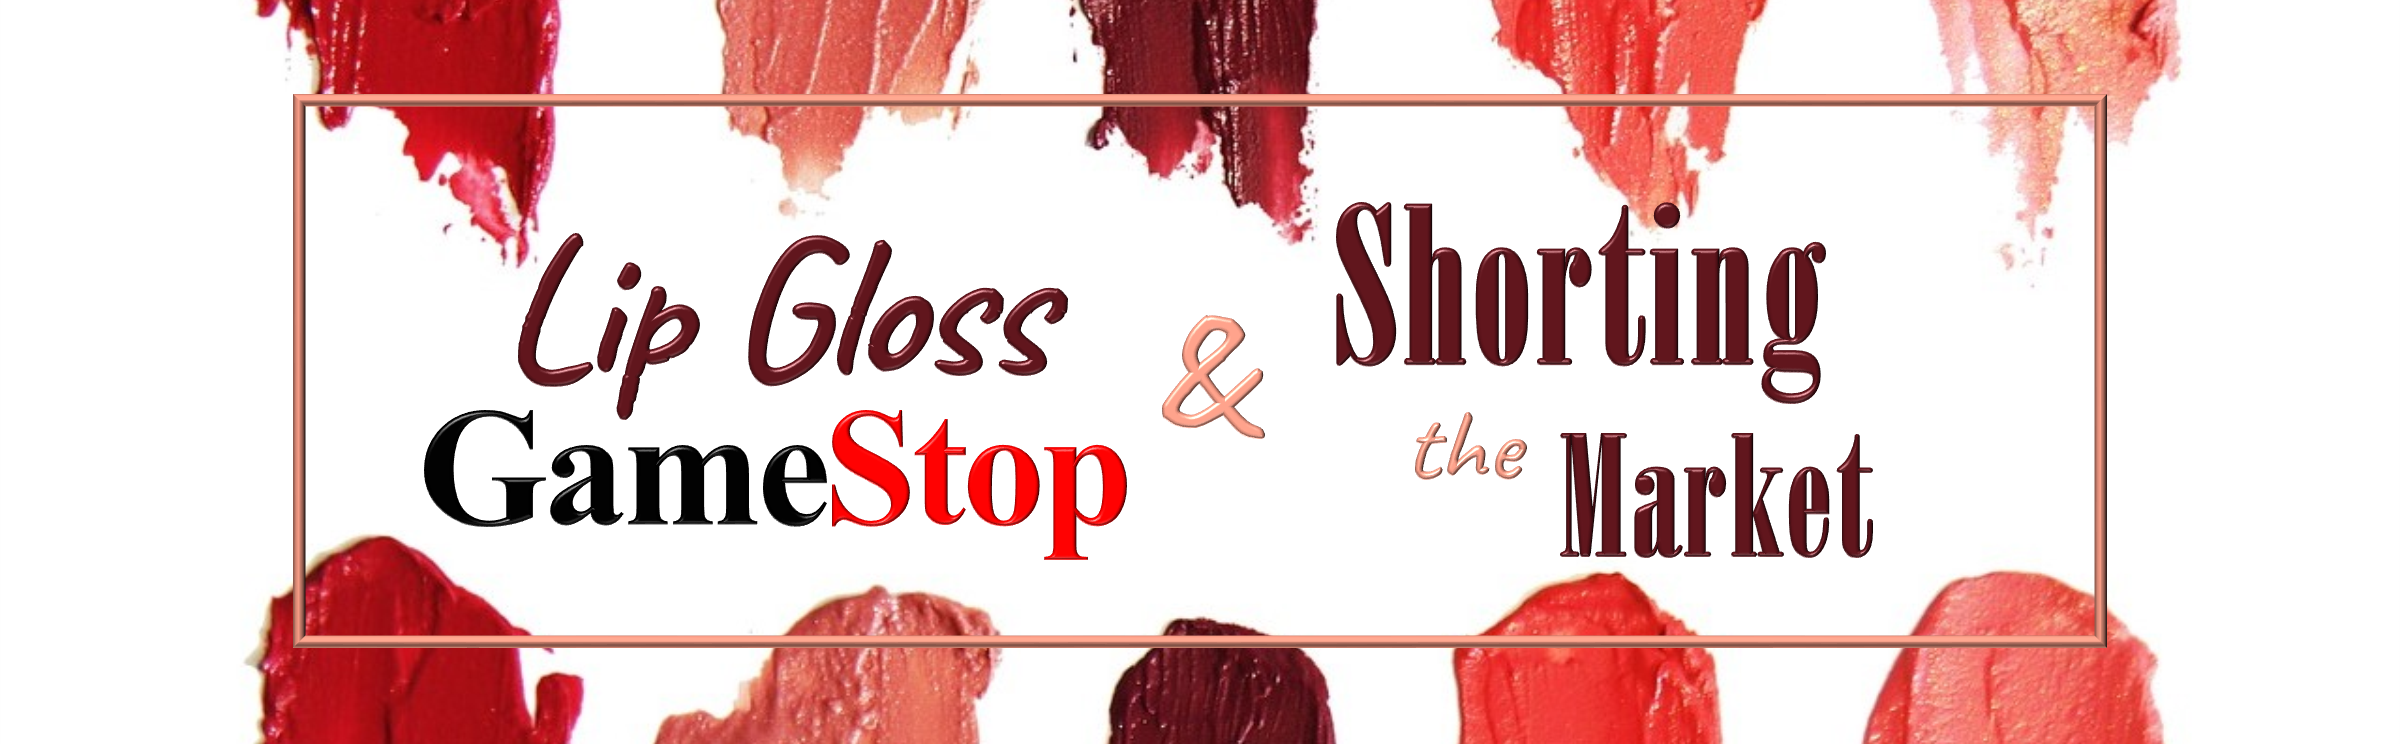 Lip Gloss, GameStop, and Shorting the Market